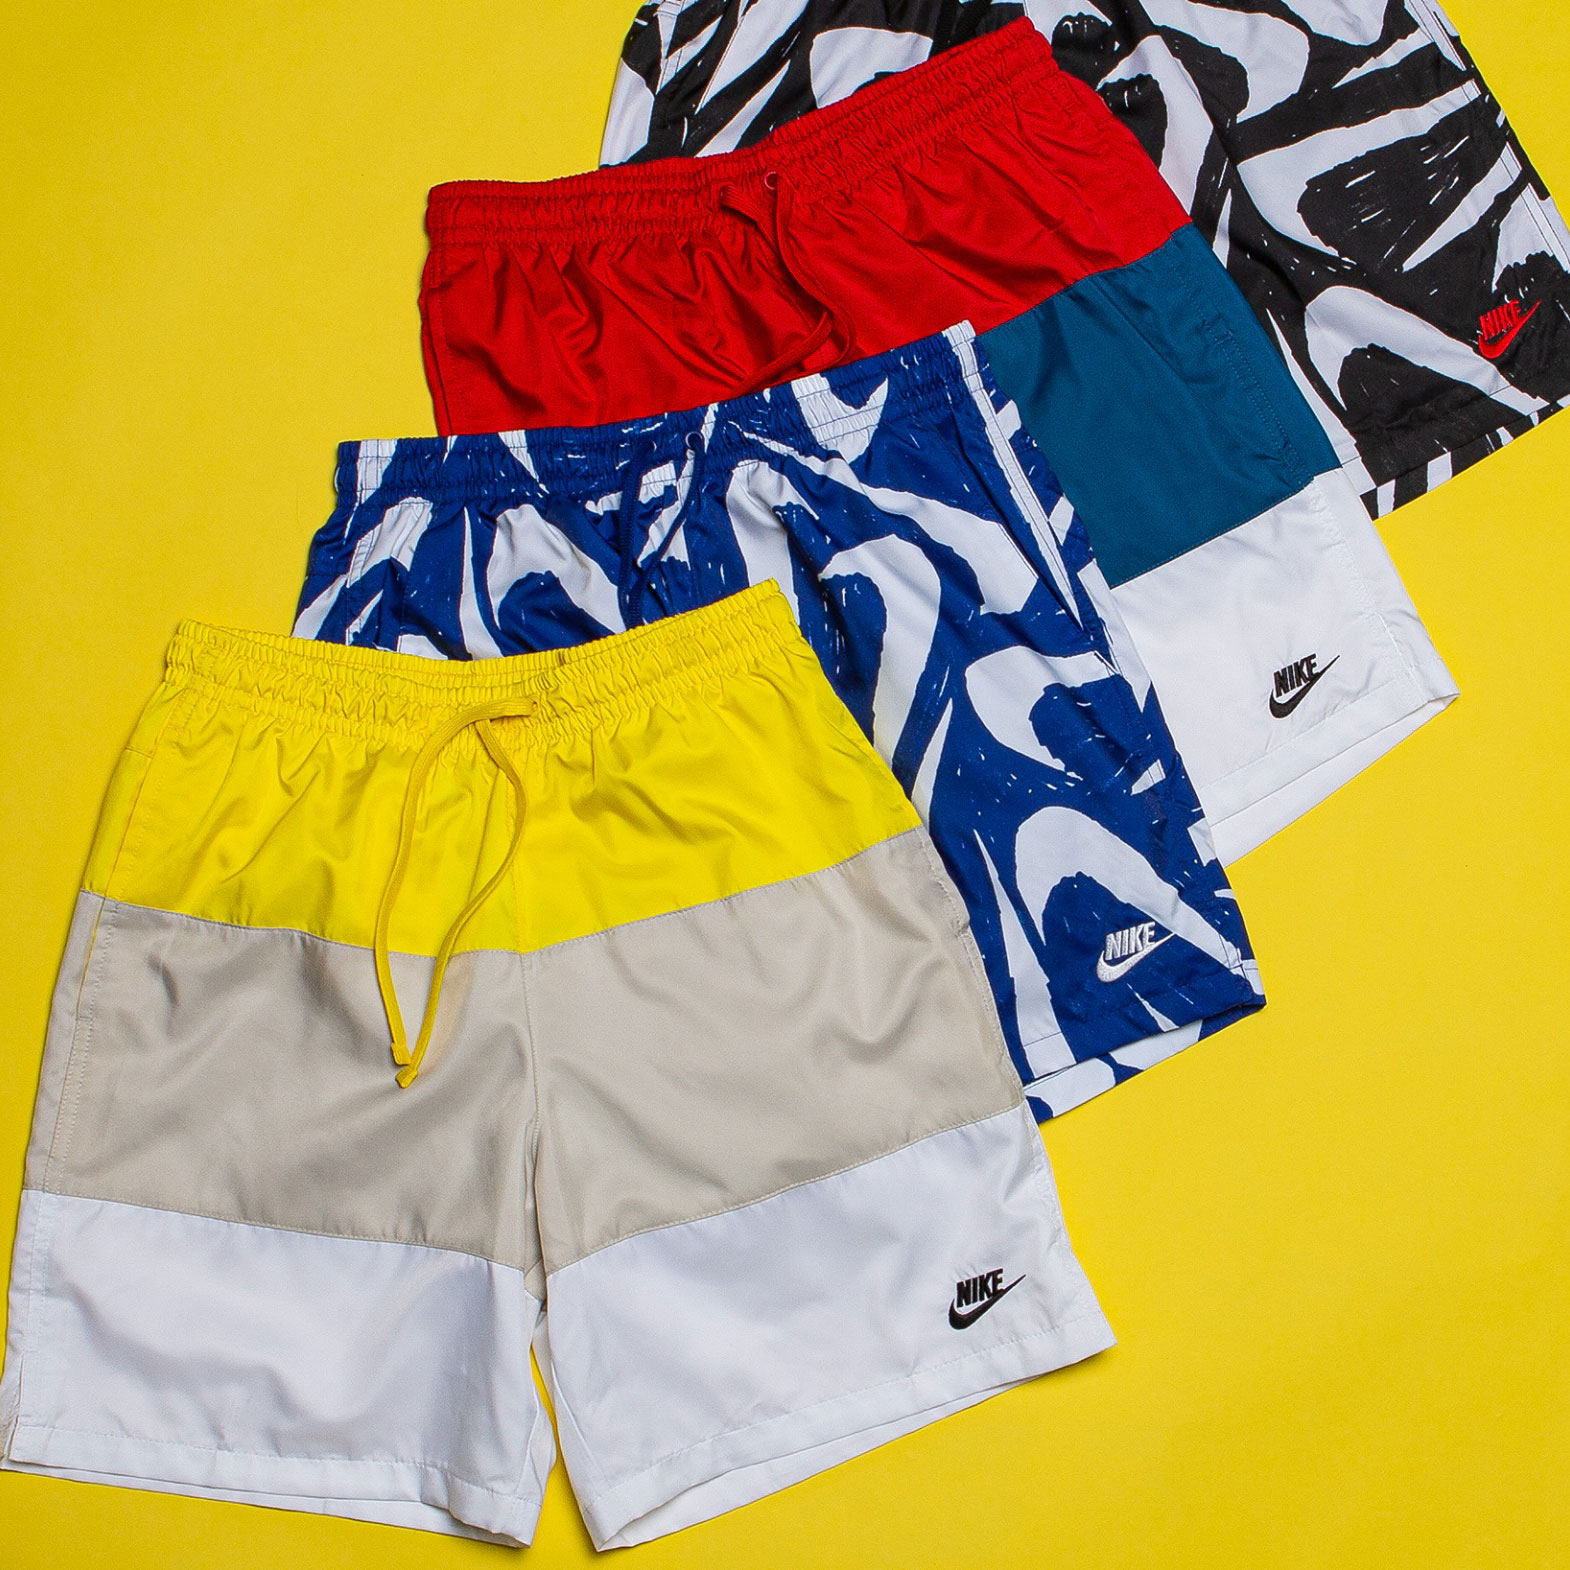 Nike Sportswear Shorts for Summer 2020 